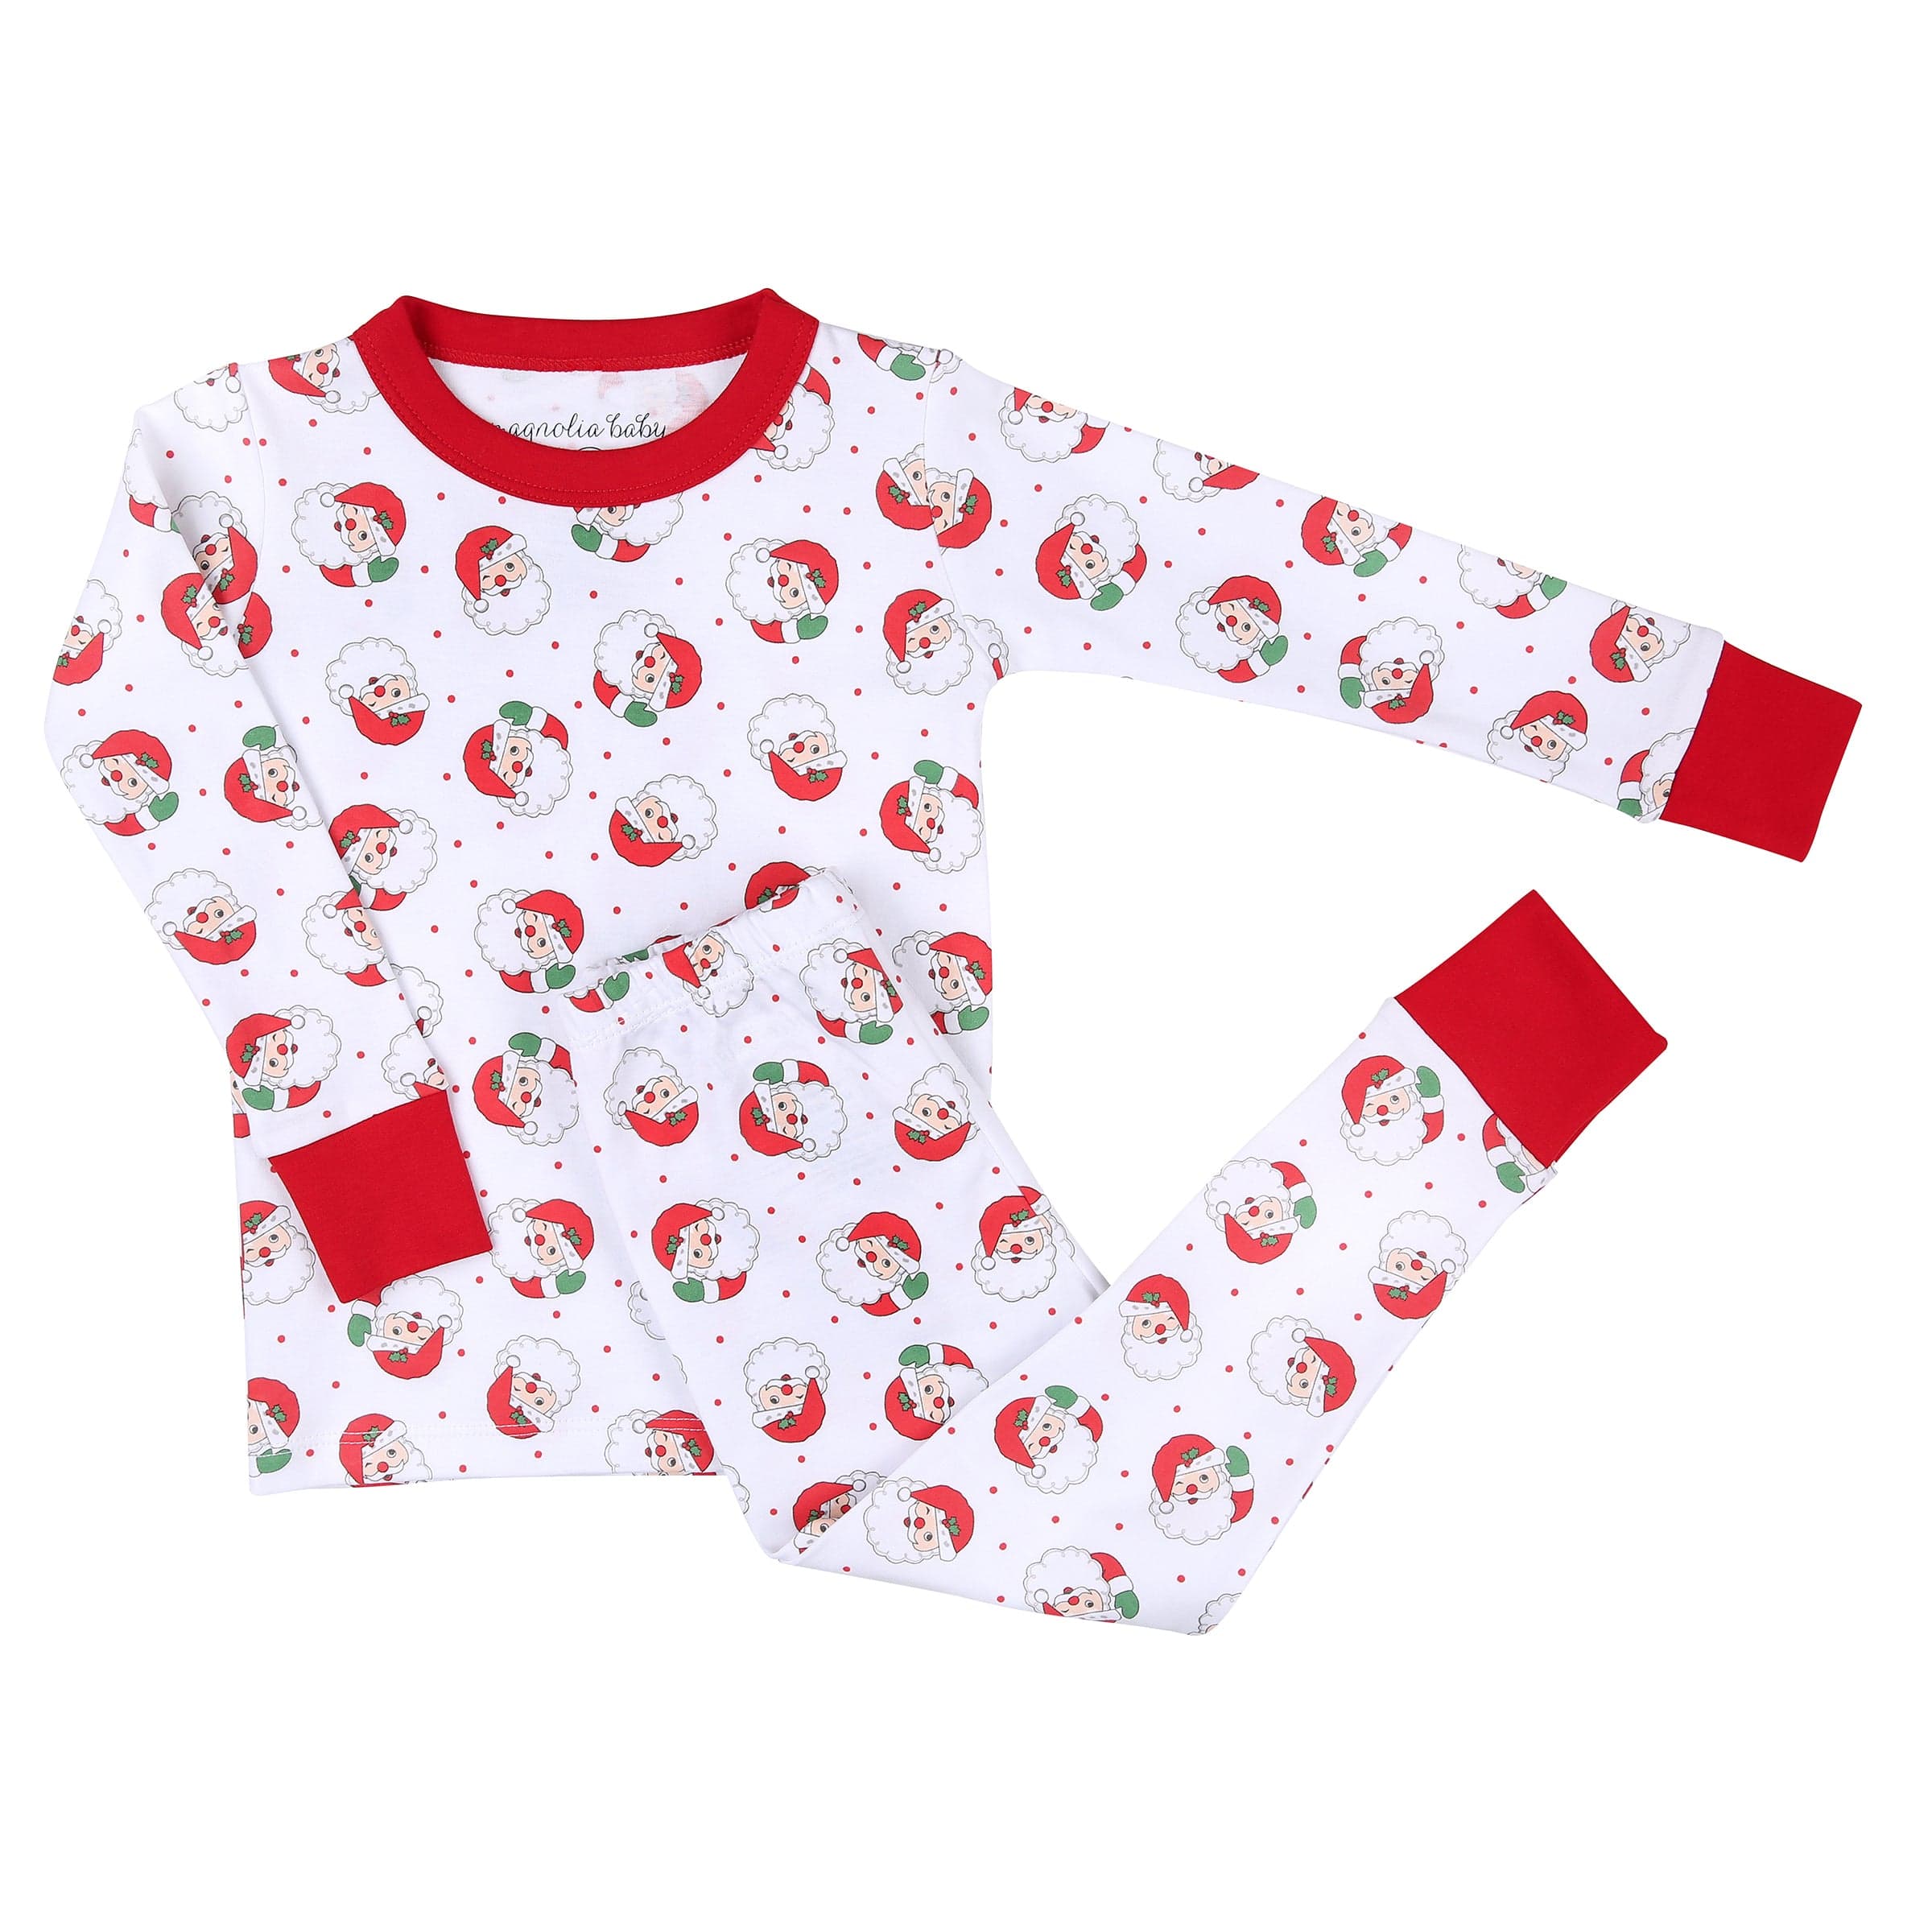 MAGNOLIA BABY -  Winking Santa Print Pyjamas - Red